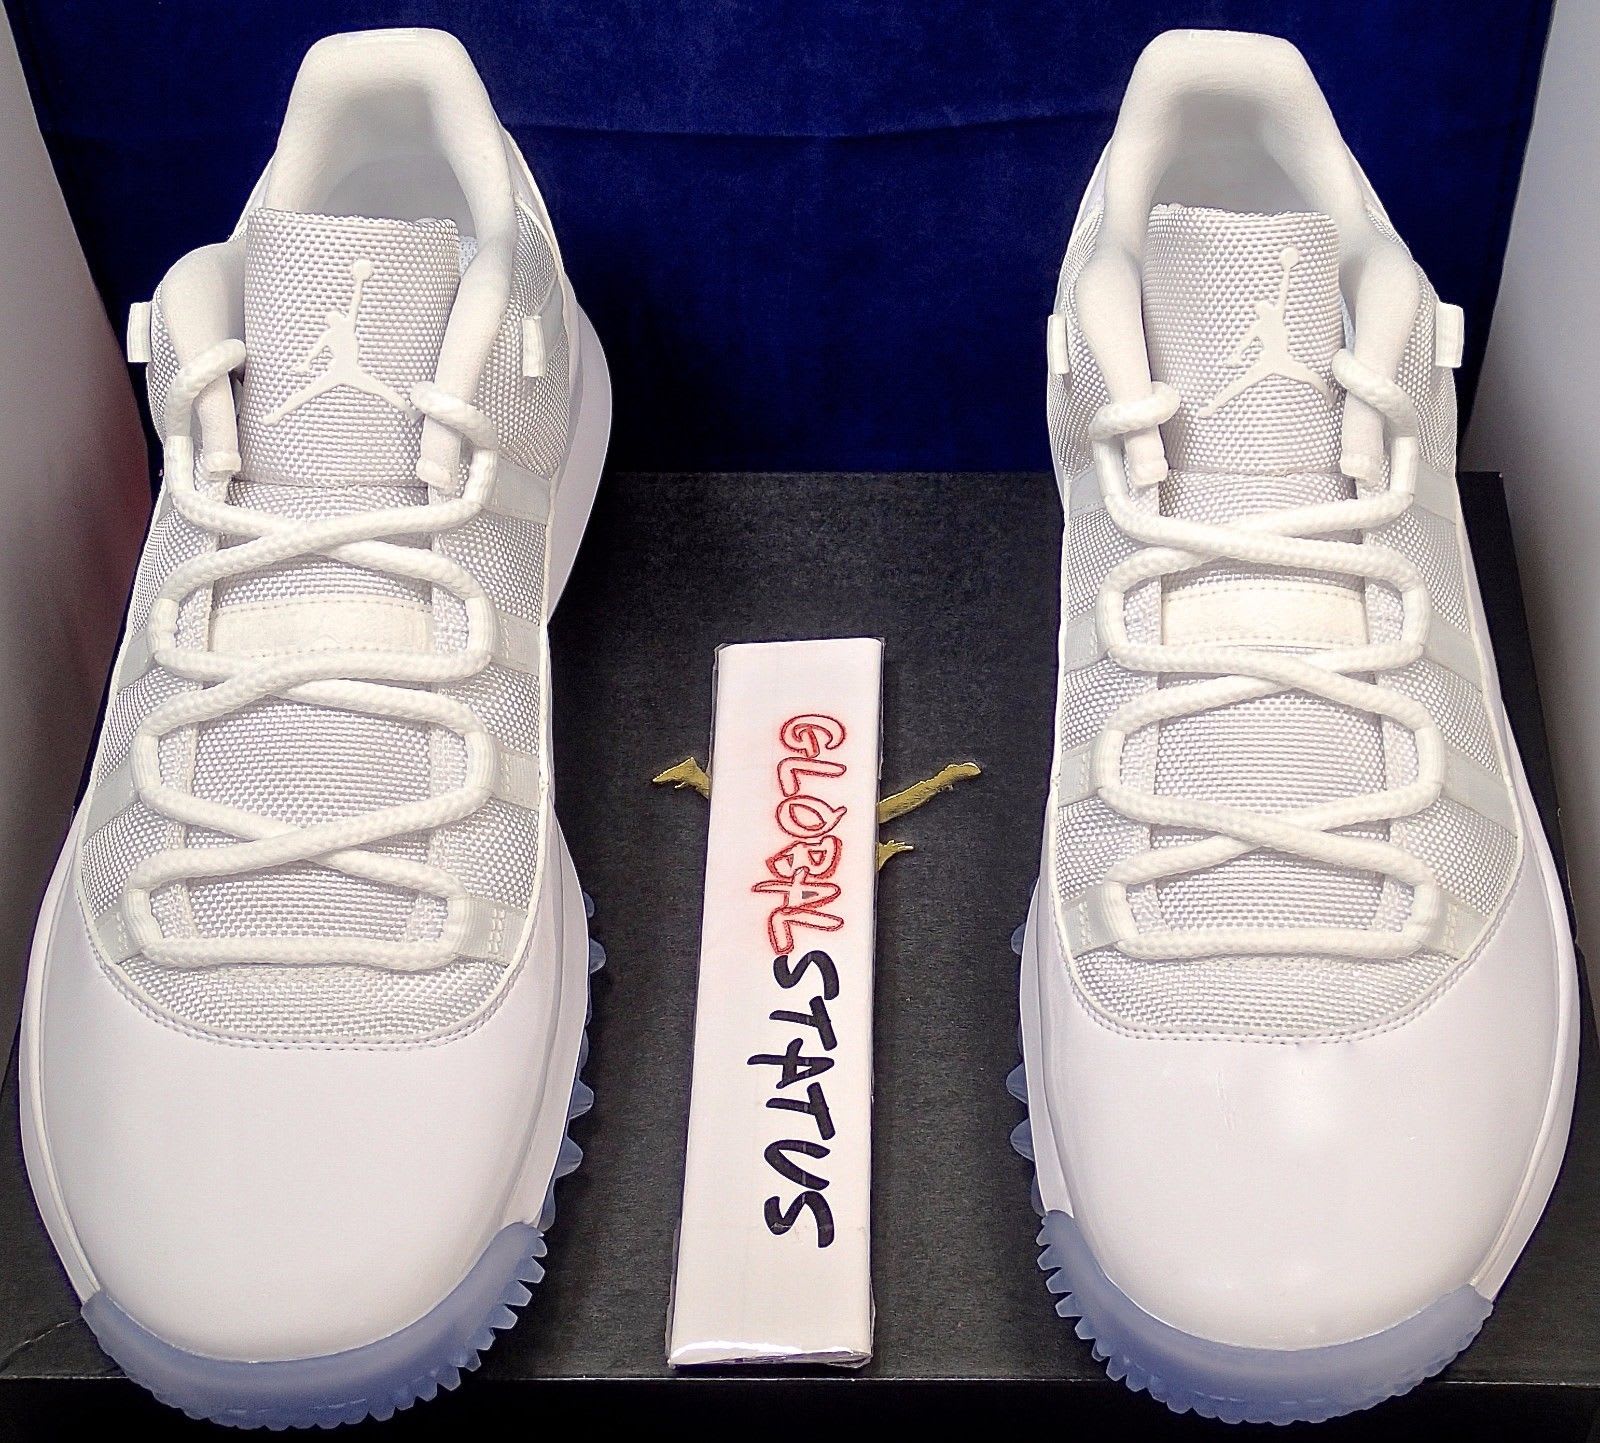 Air Jordan 11 Low White Golf Shoes Michael Jordan PE (7)